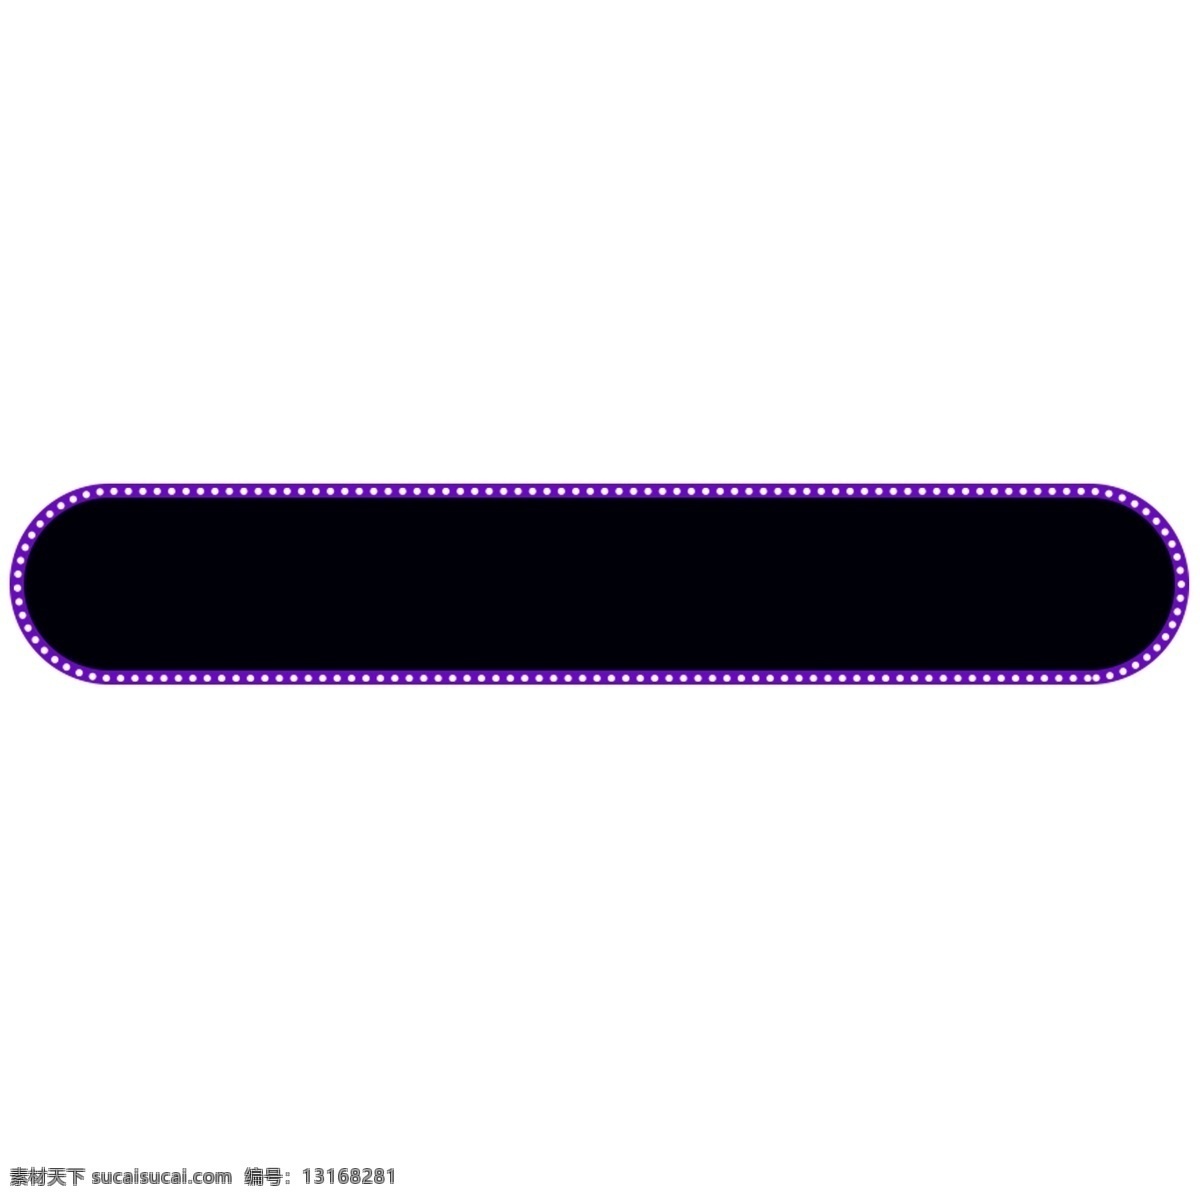 紫色 边框 圆角 矩形 白色 亮点 紫色边框 黑色 文本框 矩形边框 设计素材